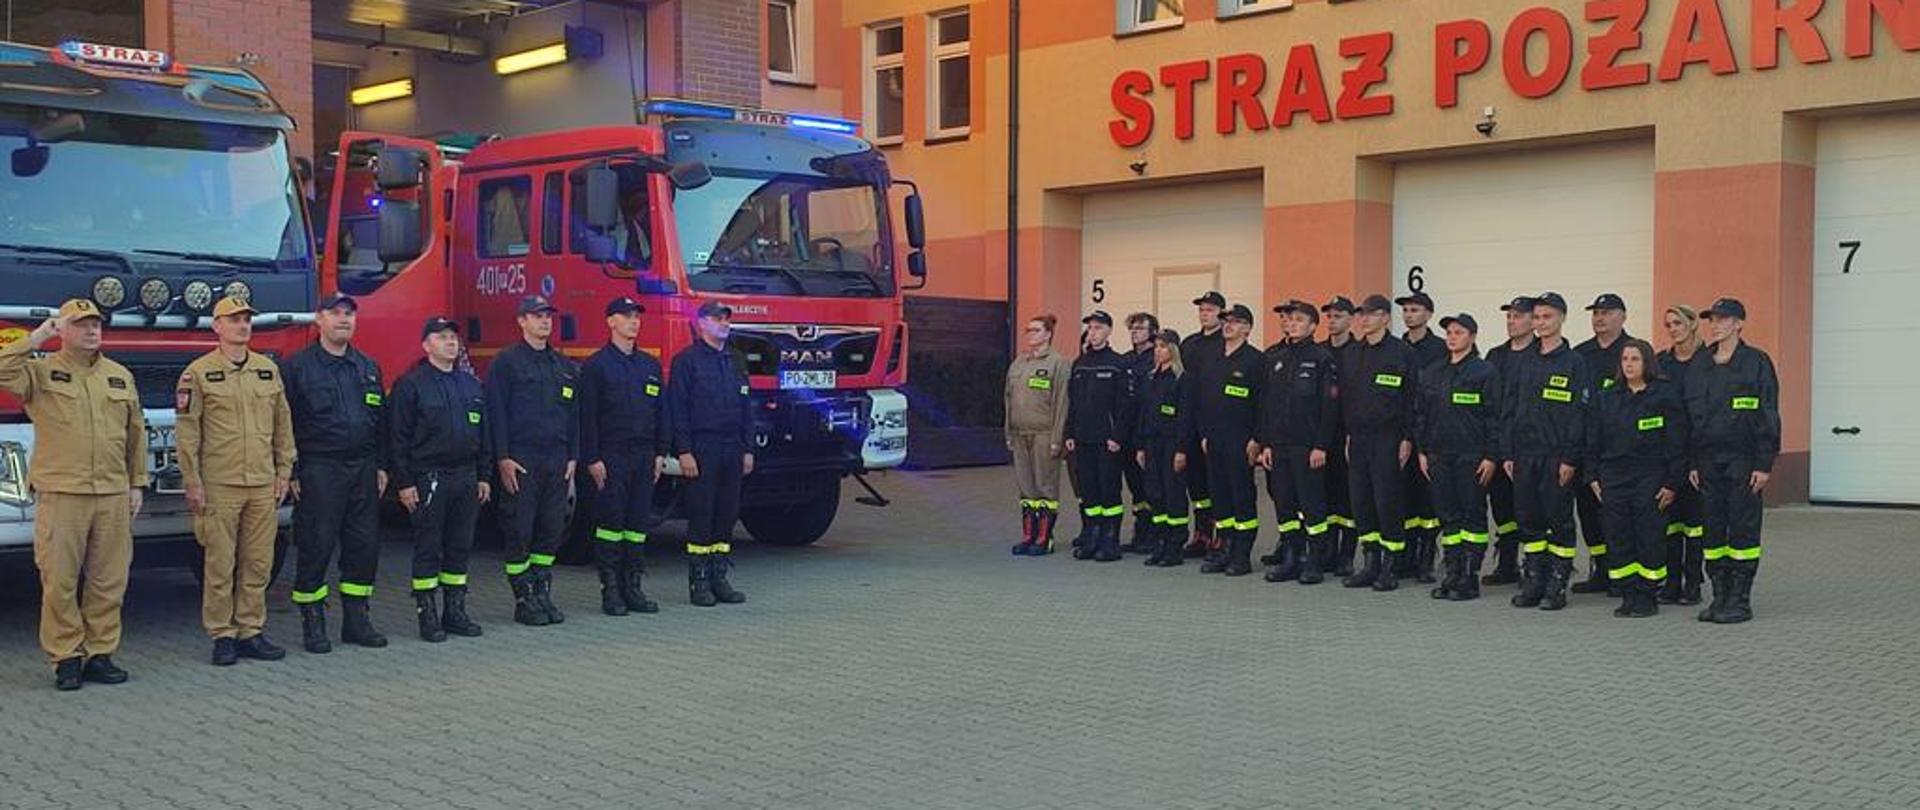 strażacy stojący w pozycji baczność